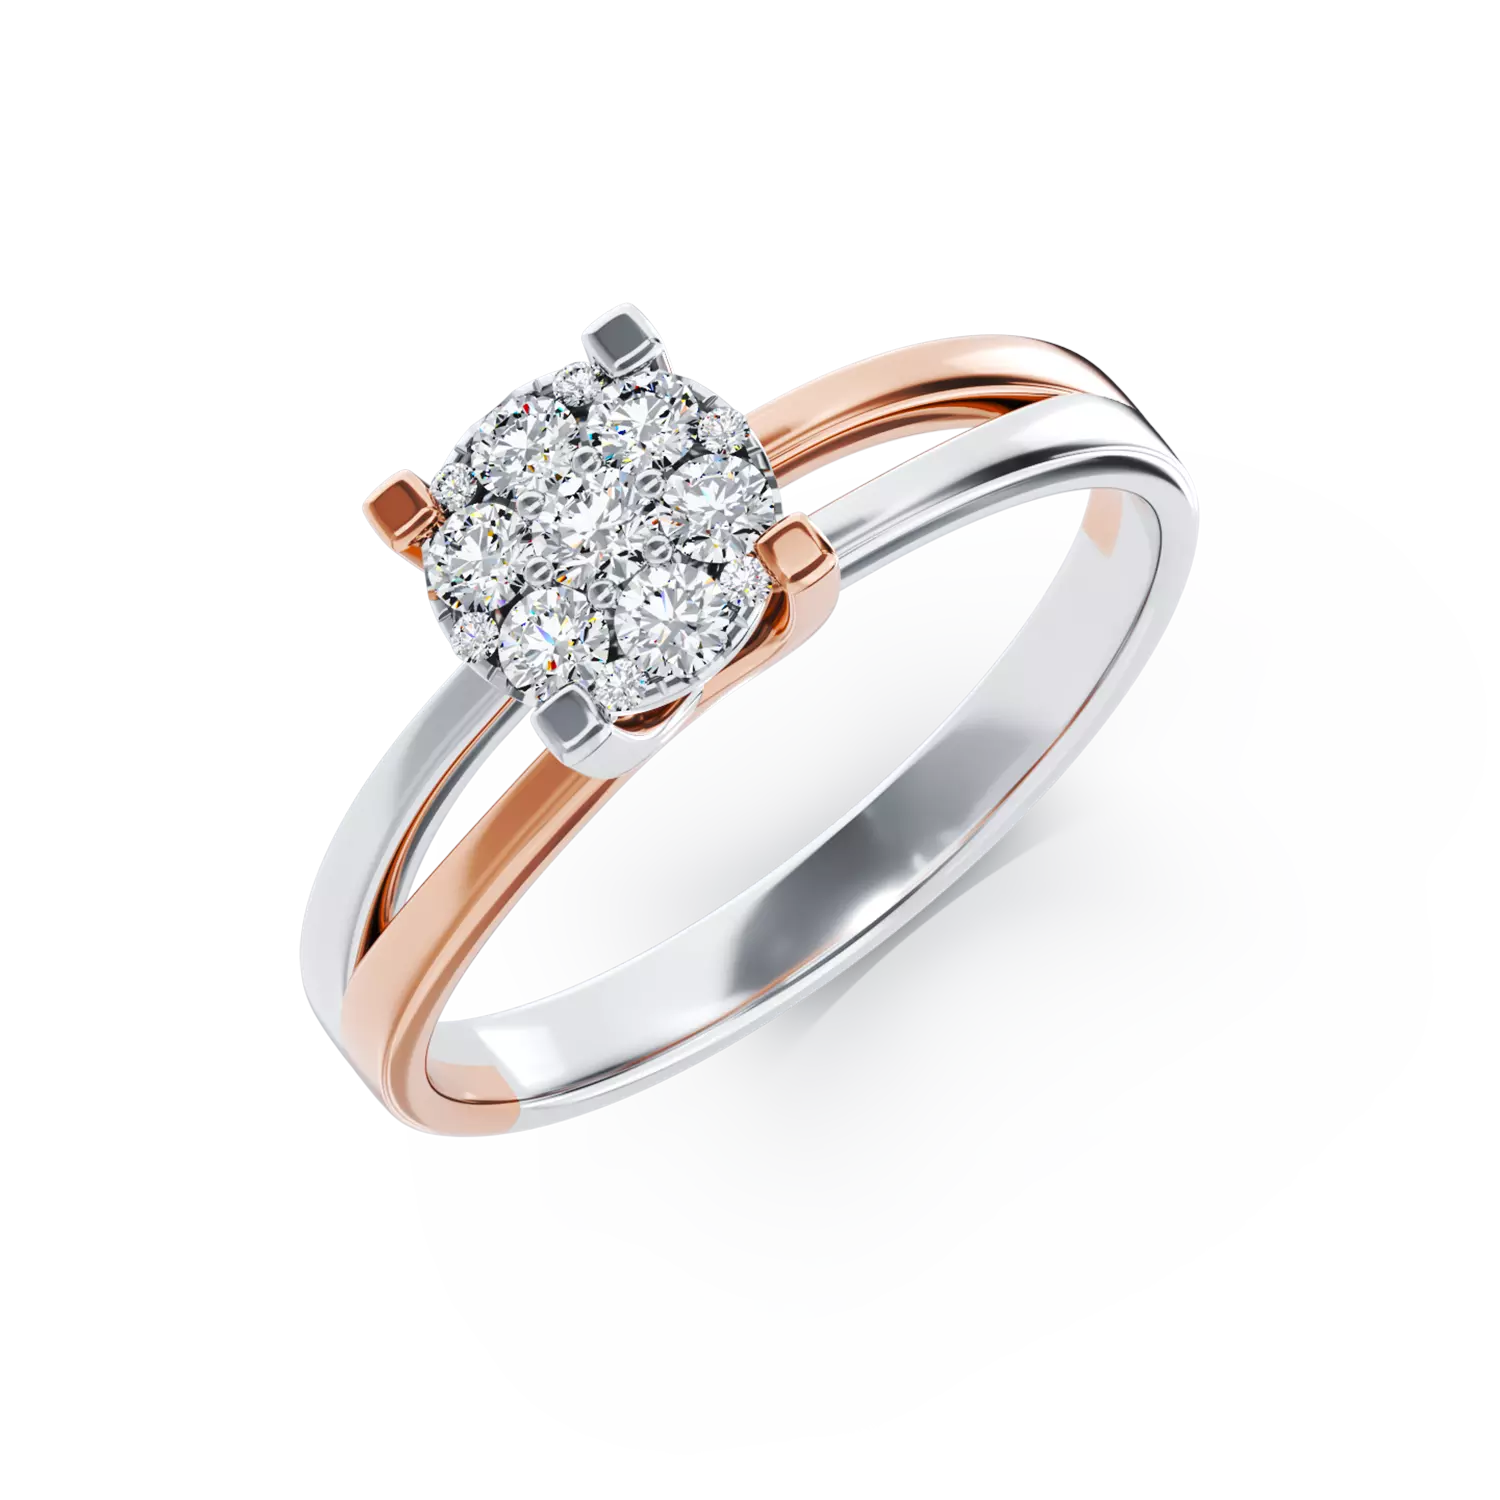 18 karátos fehérrózsa arany eljegyzési gyűrű 0.24 karátos gyémánttal